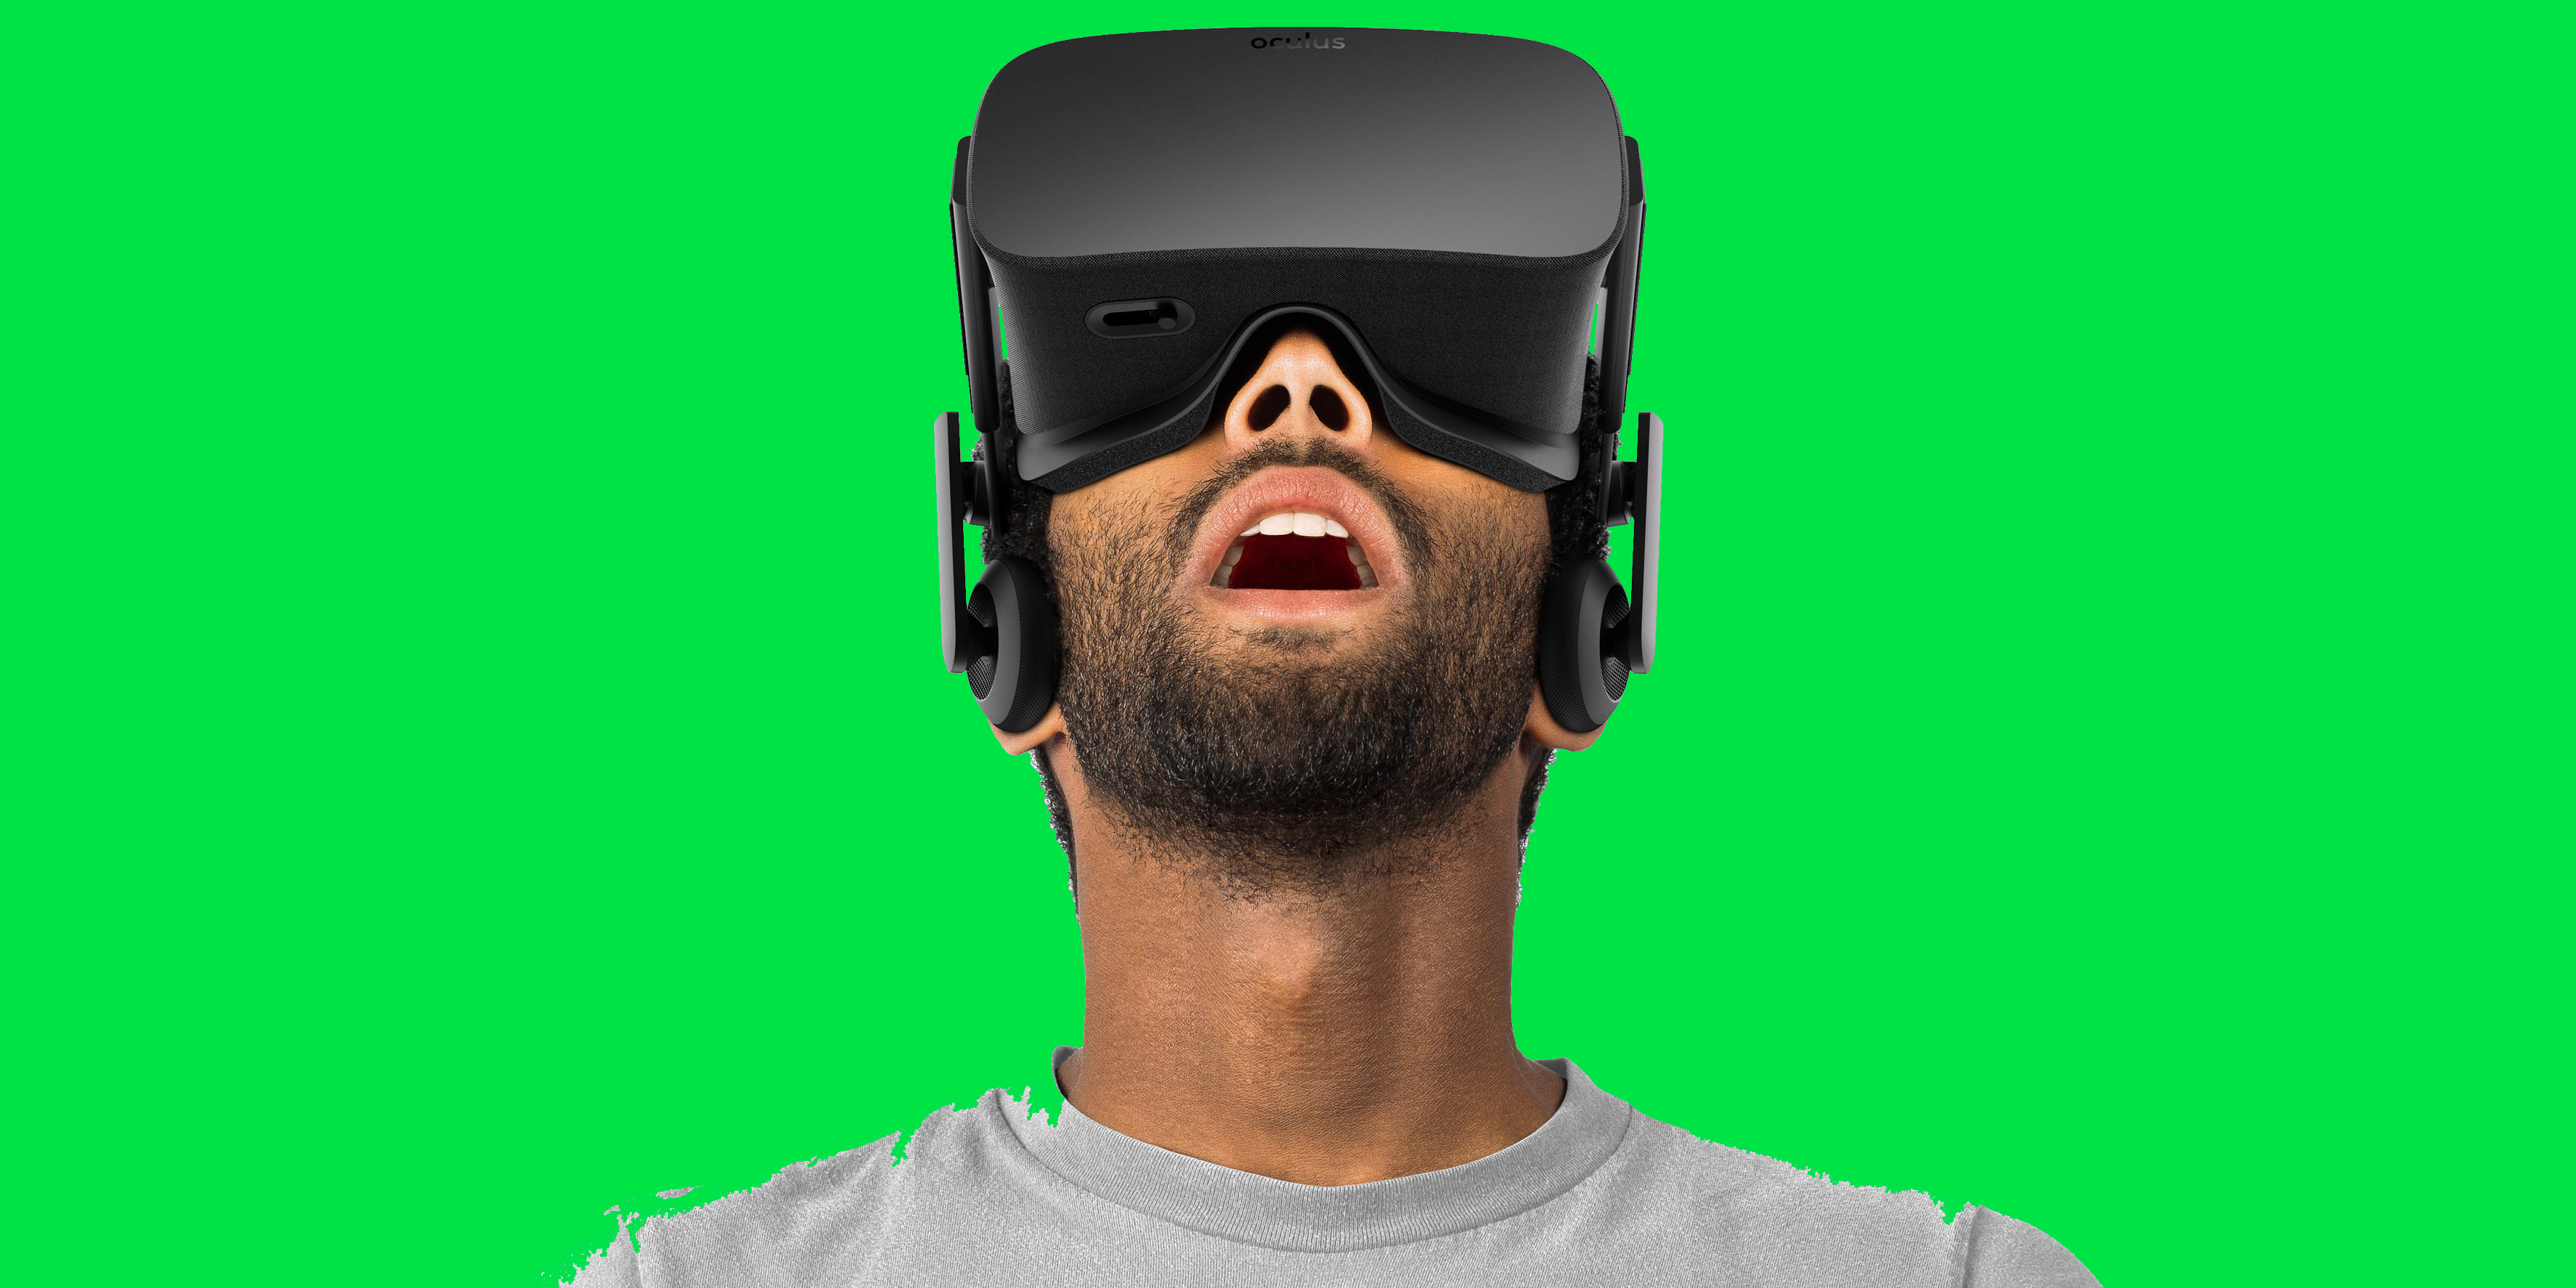 Виар очки реальности. VR шлем Окулус. Очки Окулус рифт. Гир виар очки. Очки виртуальной реальности Oculus 2017.